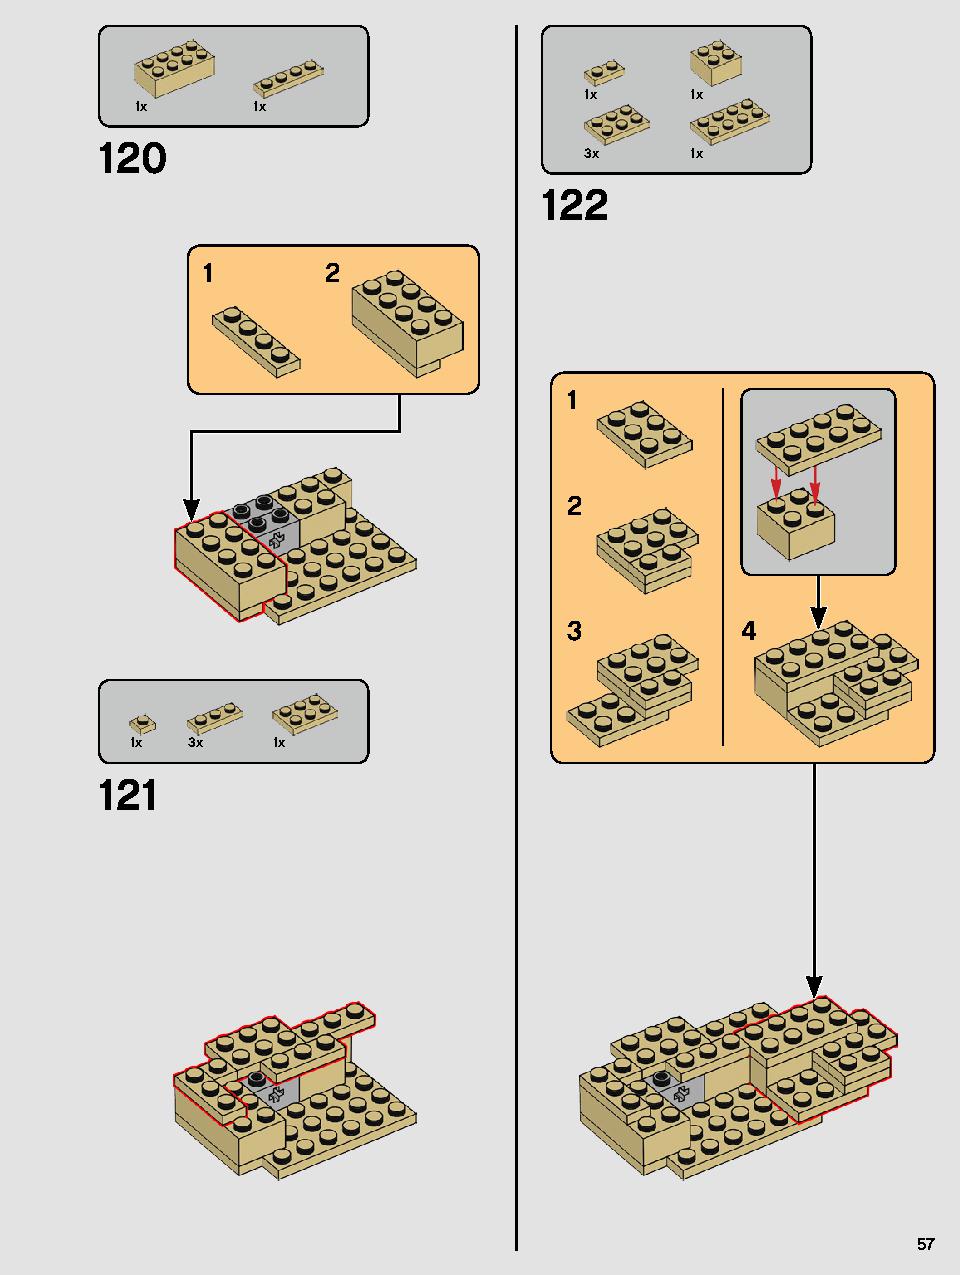 ヨーダ™ 75255 レゴの商品情報 レゴの説明書・組立方法 57 page